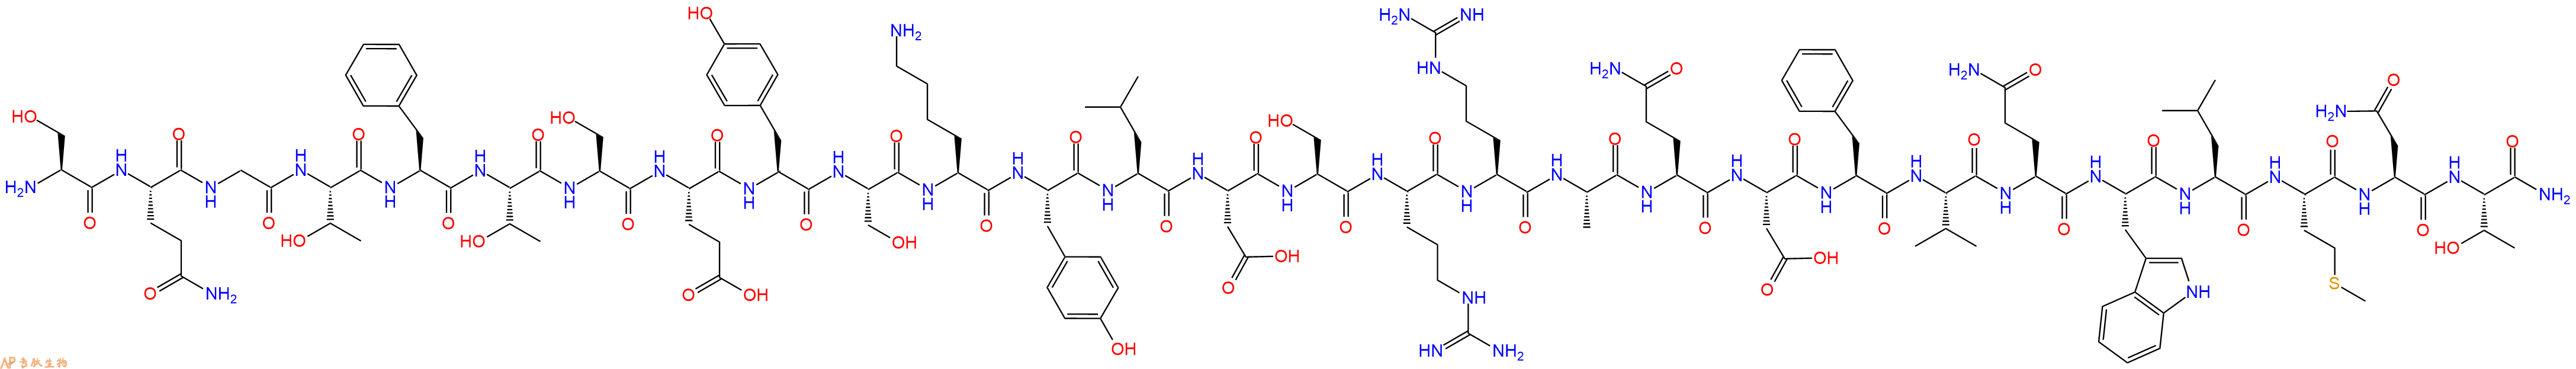 专肽生物产品胰高血糖素[Des-His1, Glu9]Glucagon(1-29), amide110084-95-2